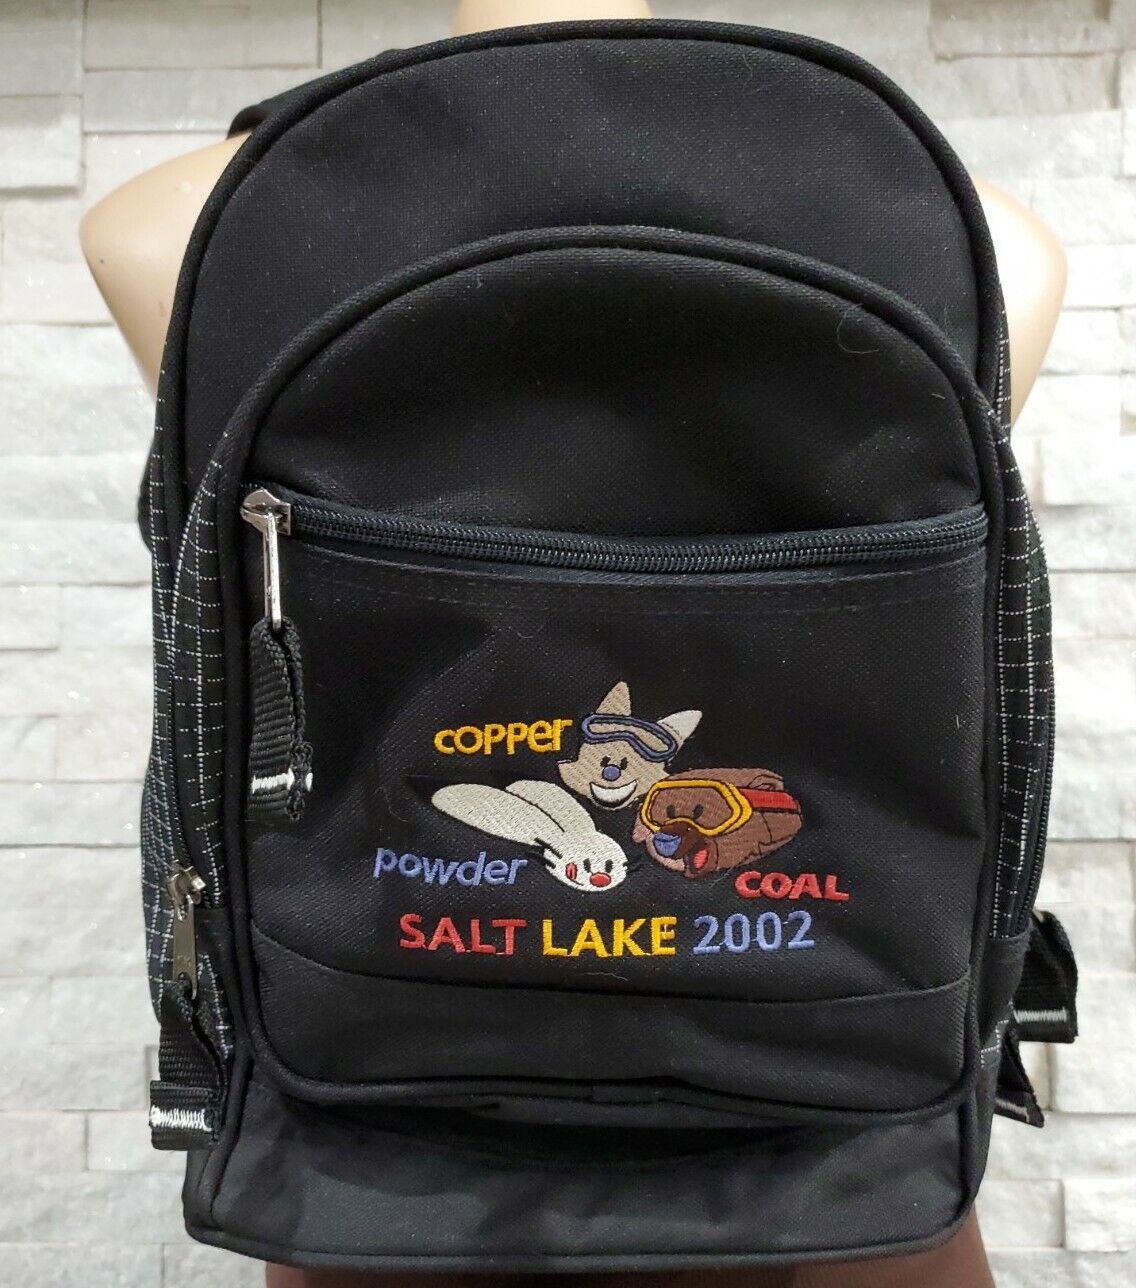 andyy samberg add salt lake backpage com photo